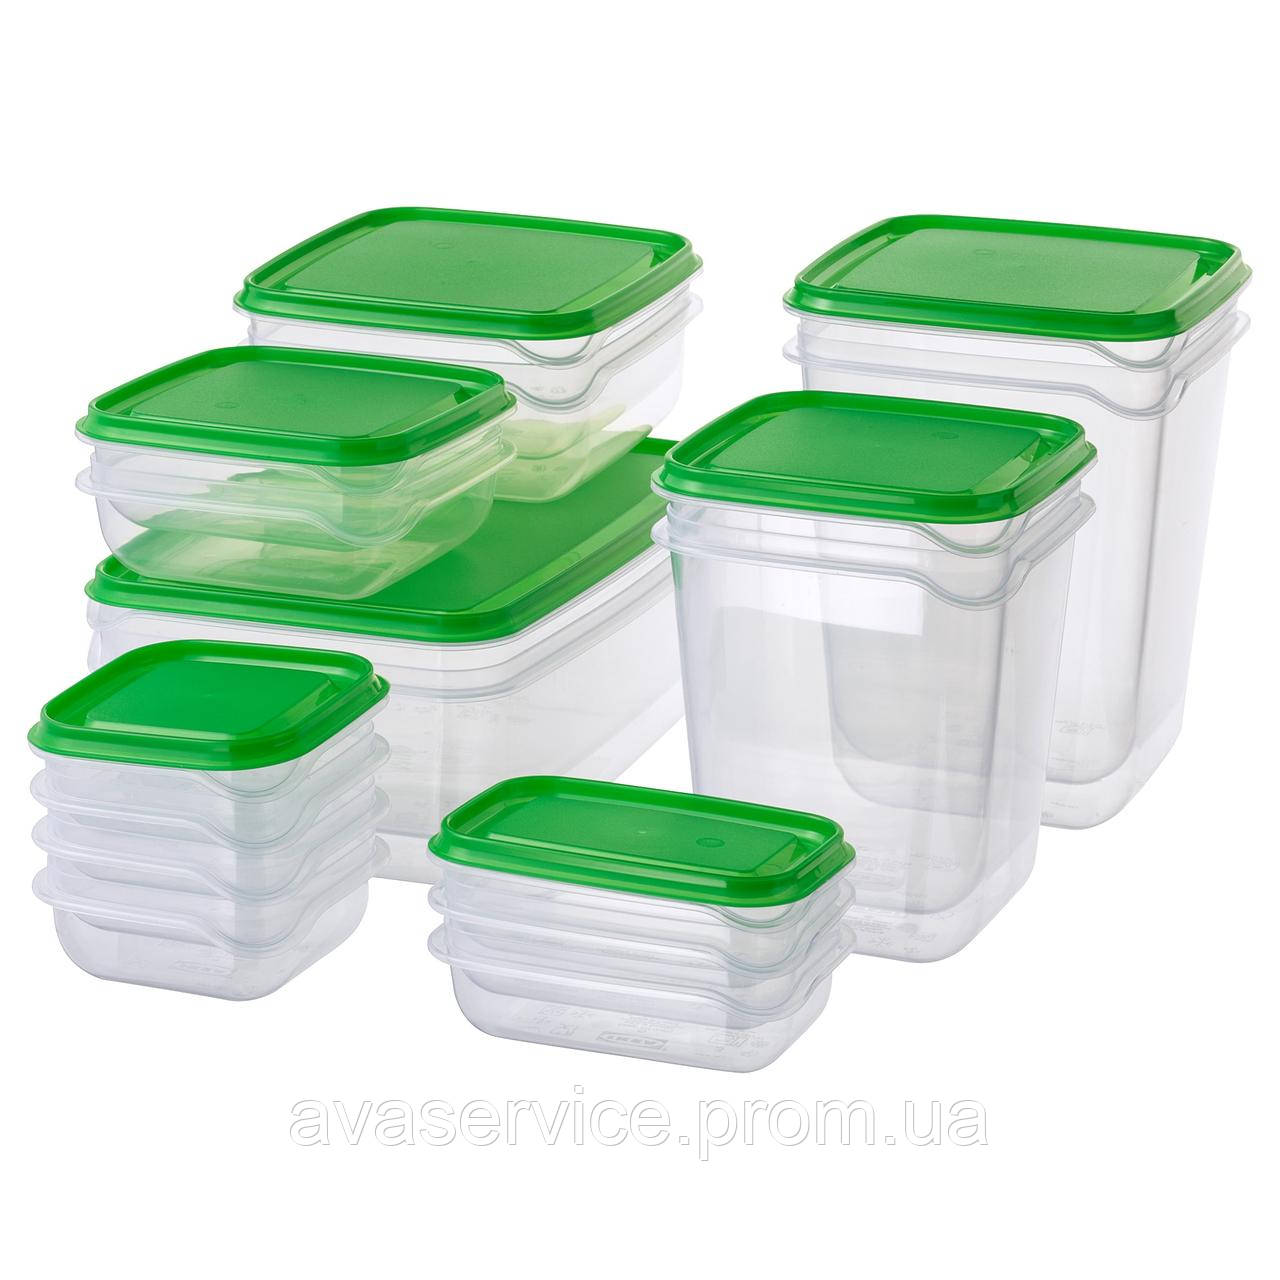 Набор контейнеров для хранения IKEA PRUTA 17 шт Зеленые 601.496.73